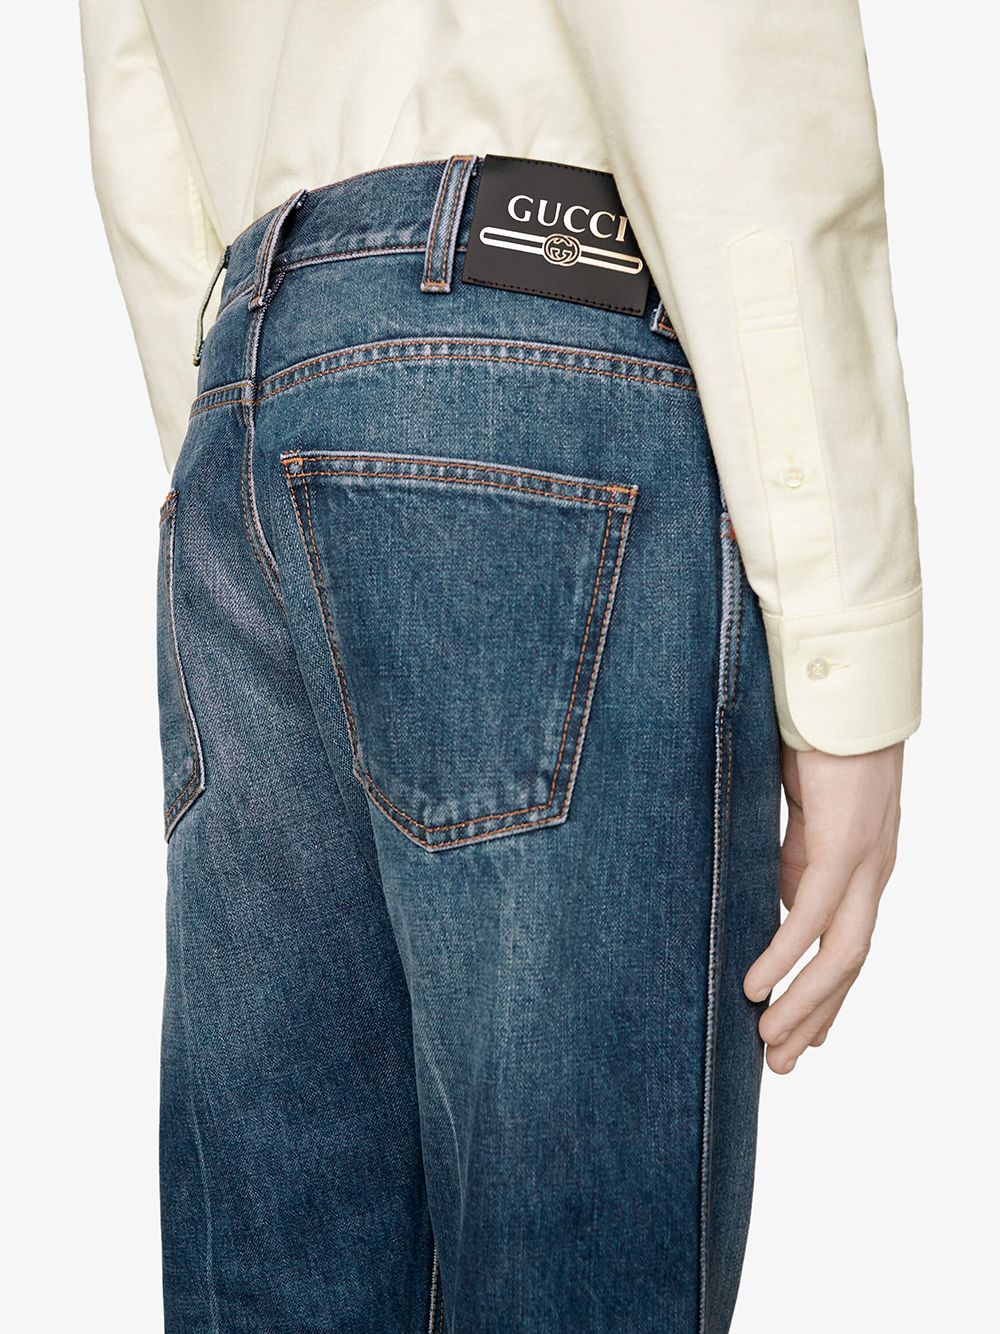 фото Gucci укороченные джинсы средней посадки